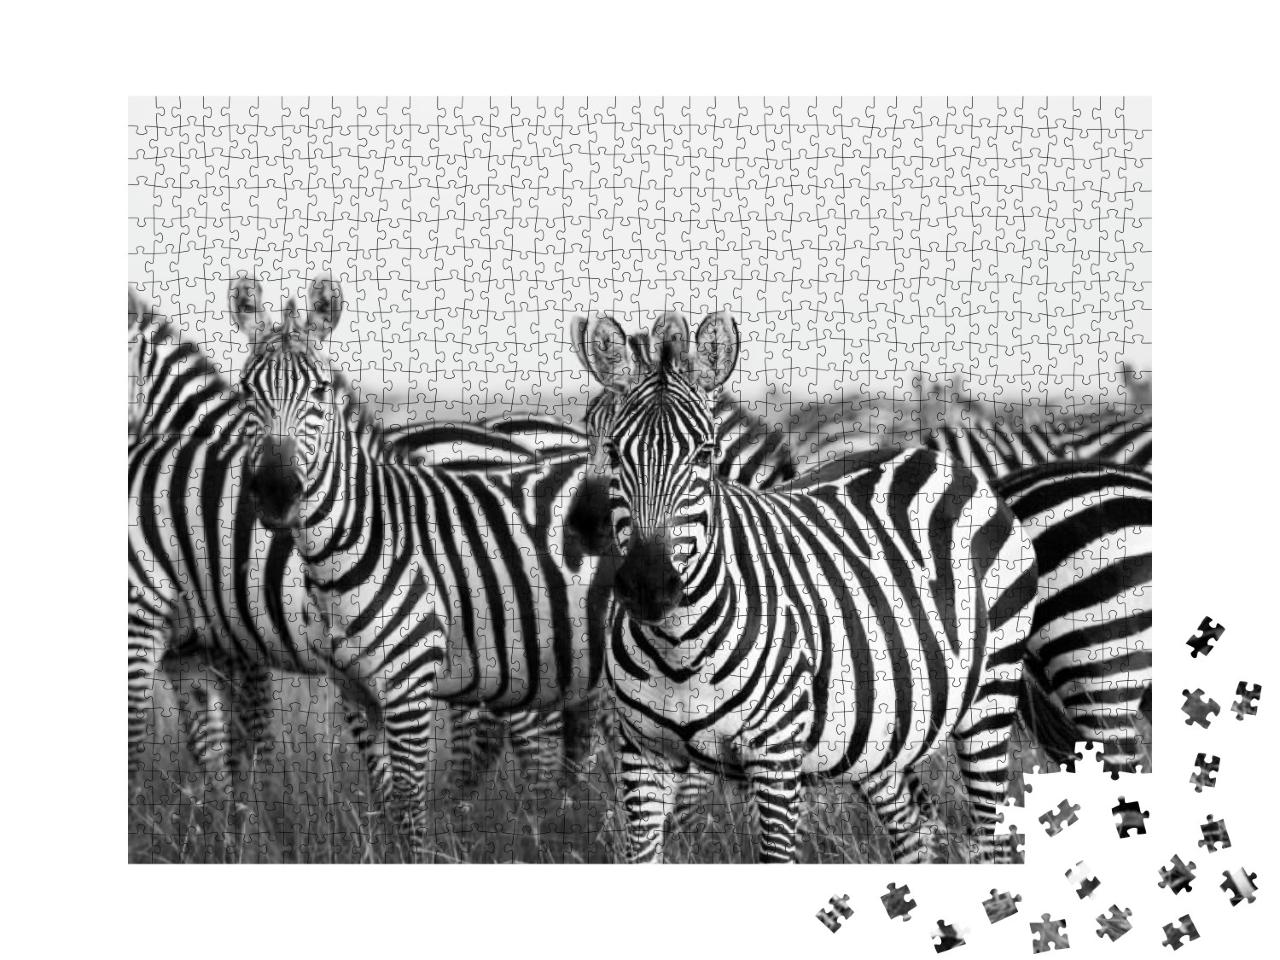 Zebra Stripes from Masai Mara... Jigsaw Puzzle with 1000 pieces